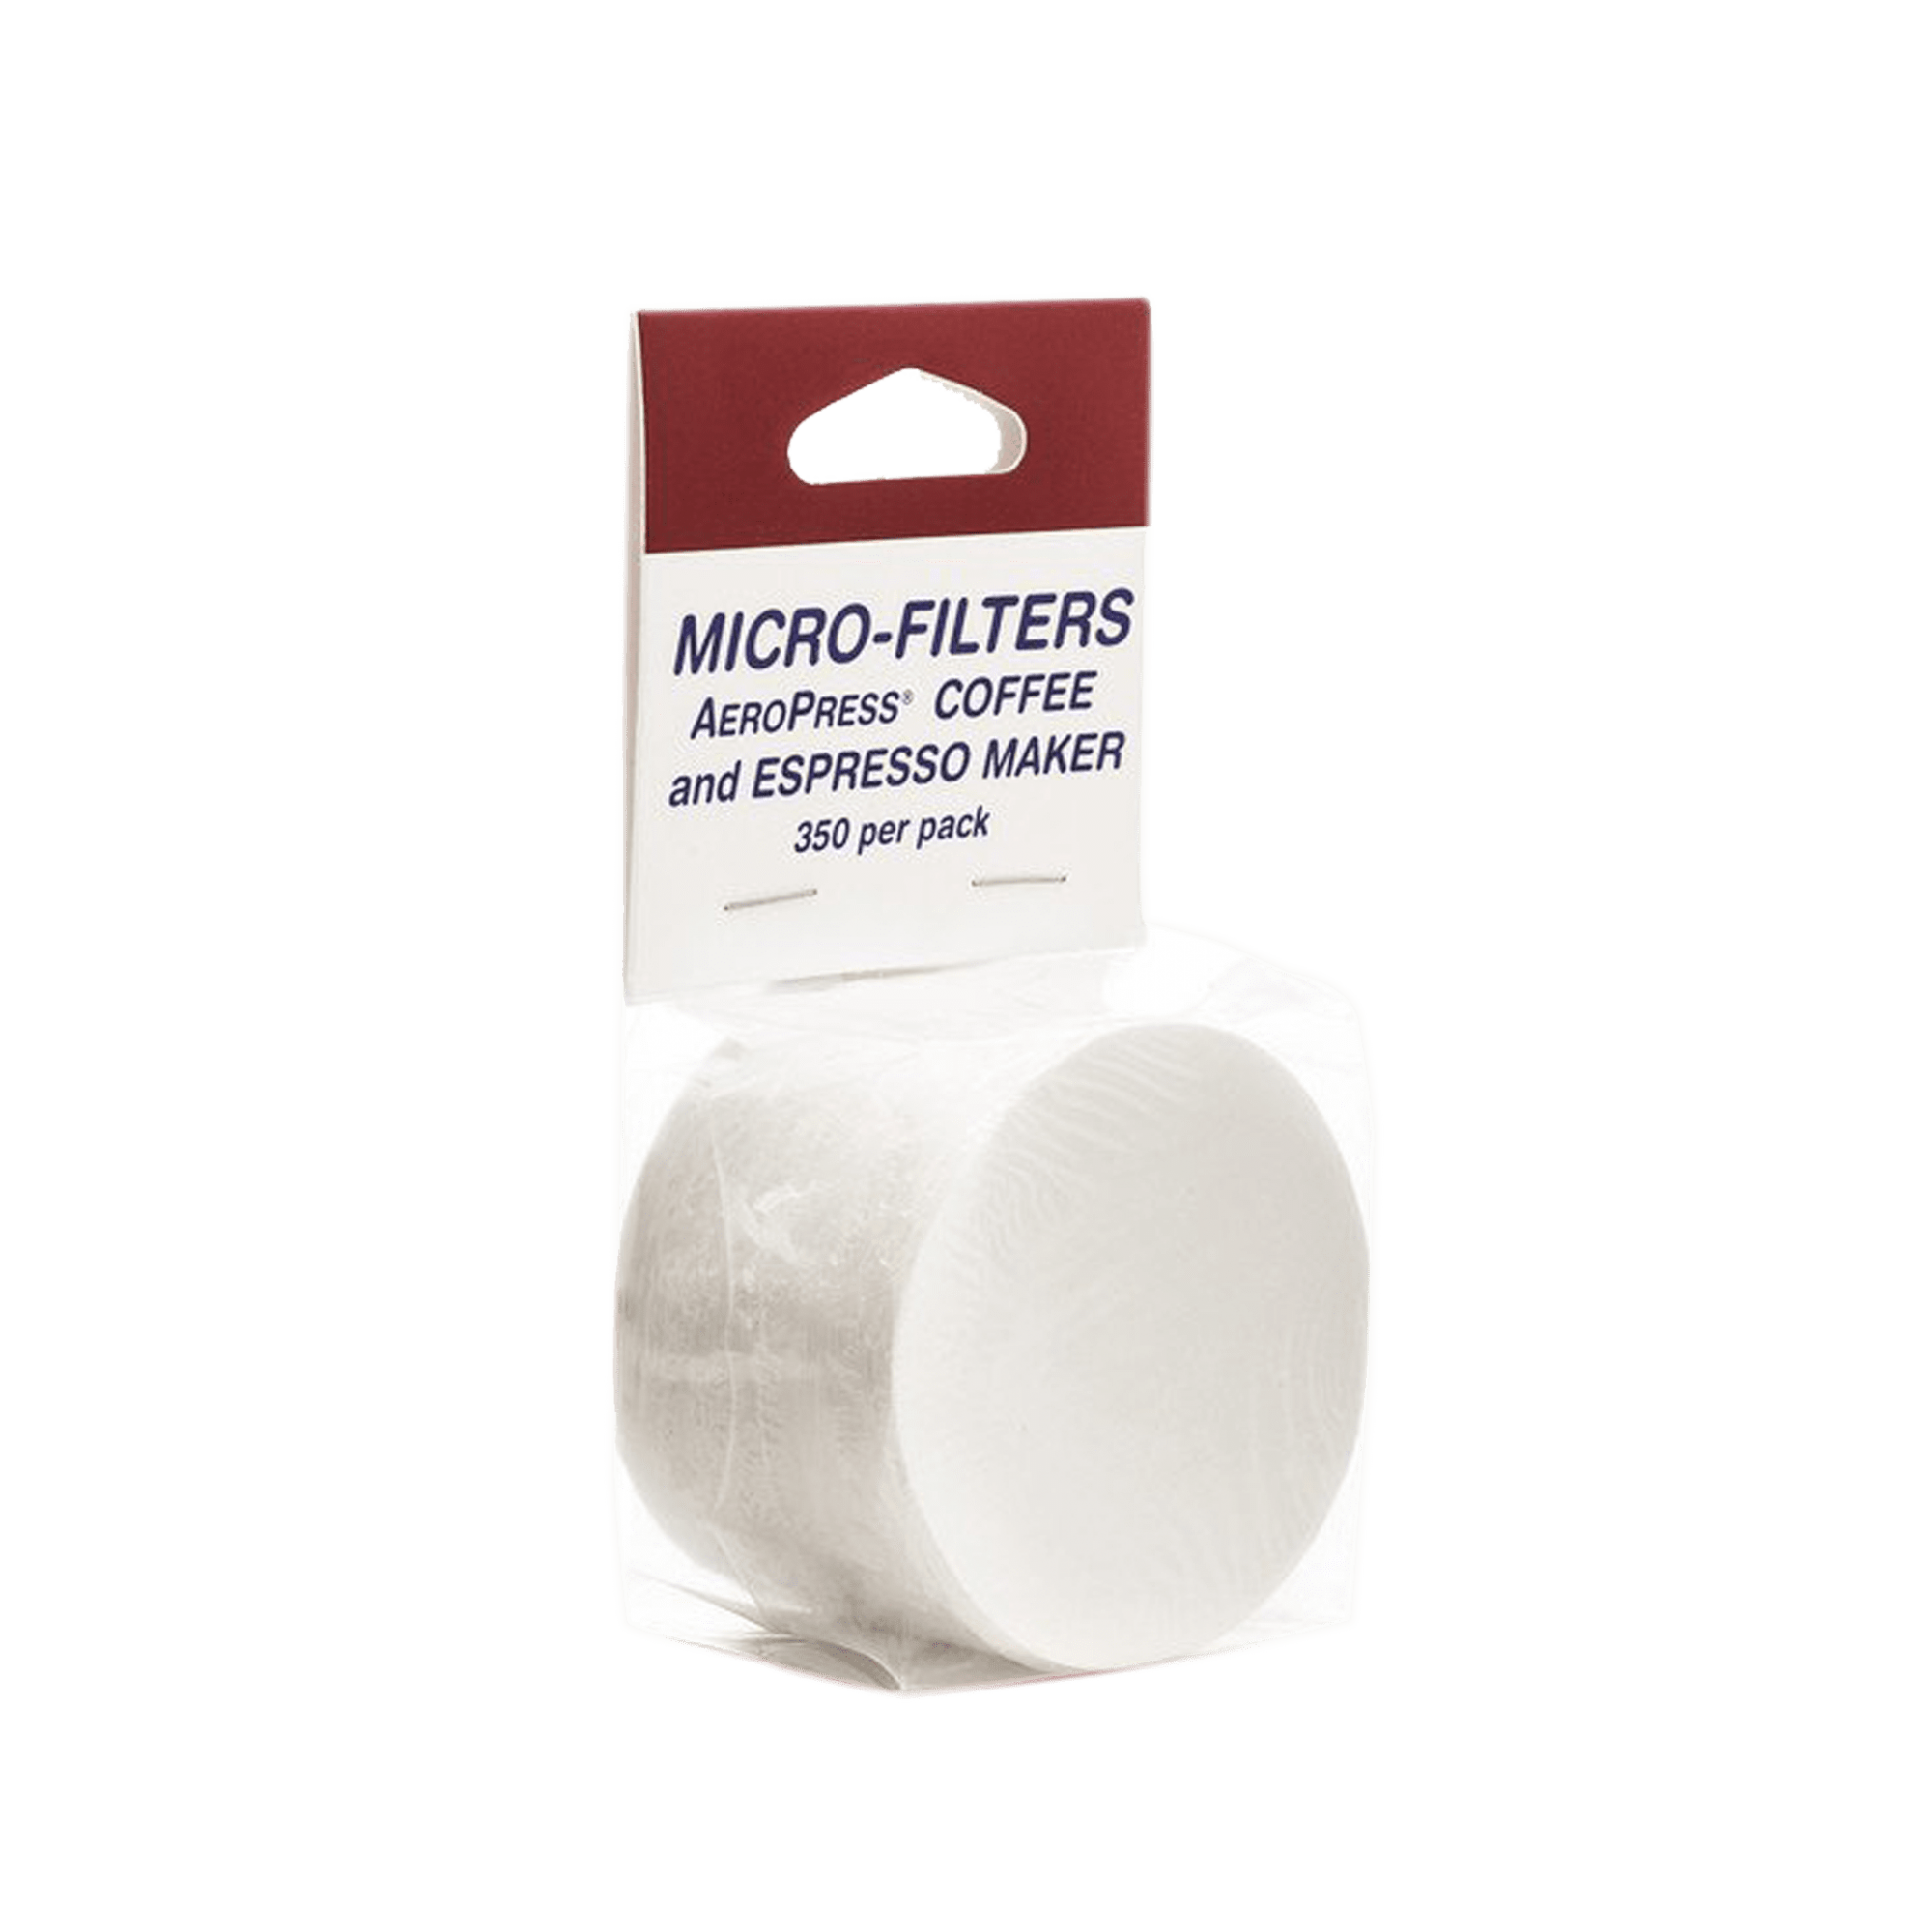 Micro Filtros de papel para Aeropress coffee maker